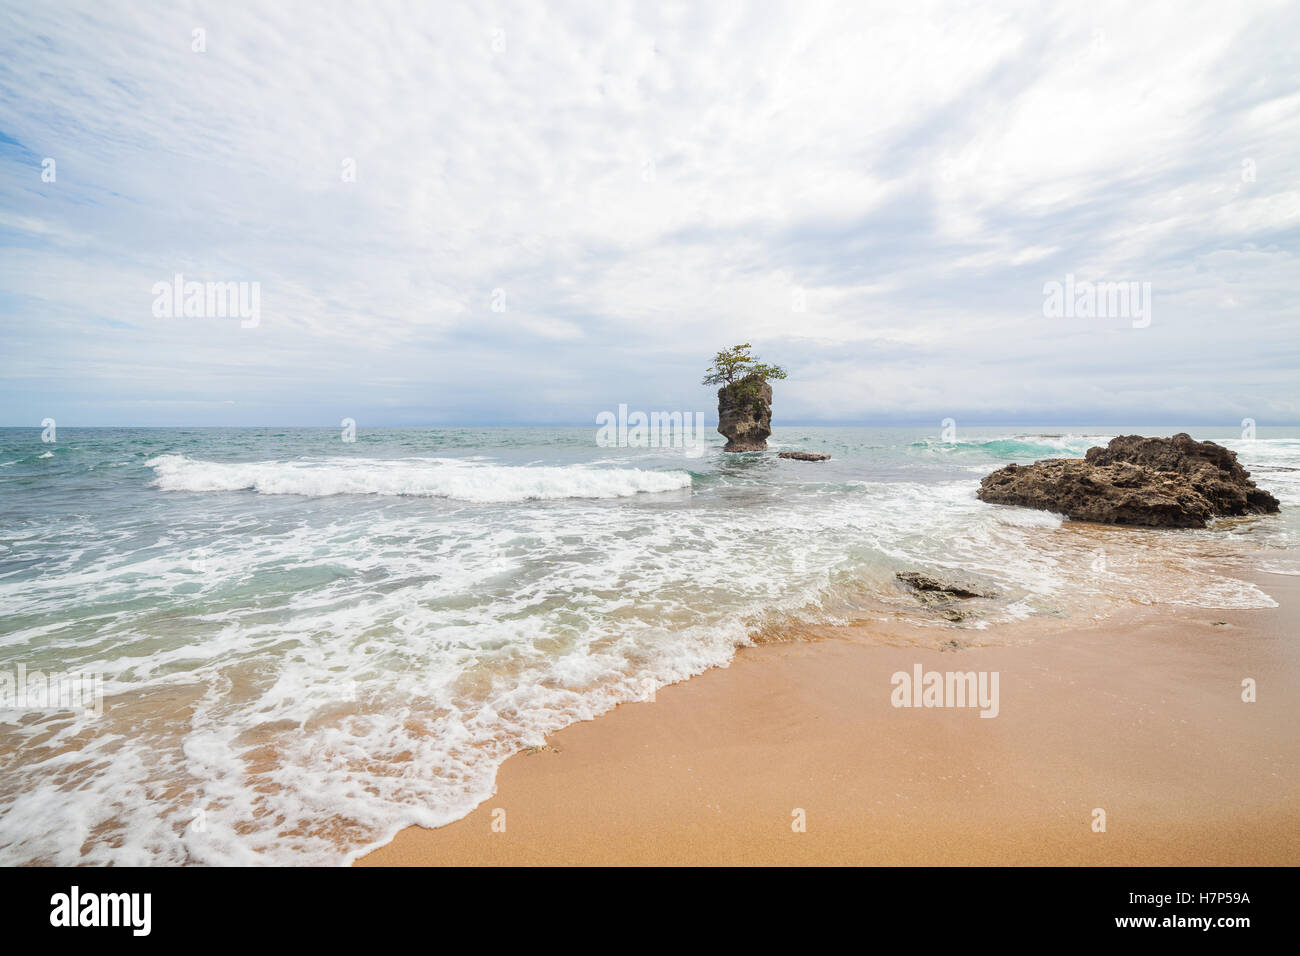 Isolotto di roccia e albero sulla parte superiore vicino alla spiaggia di sabbia Foto Stock